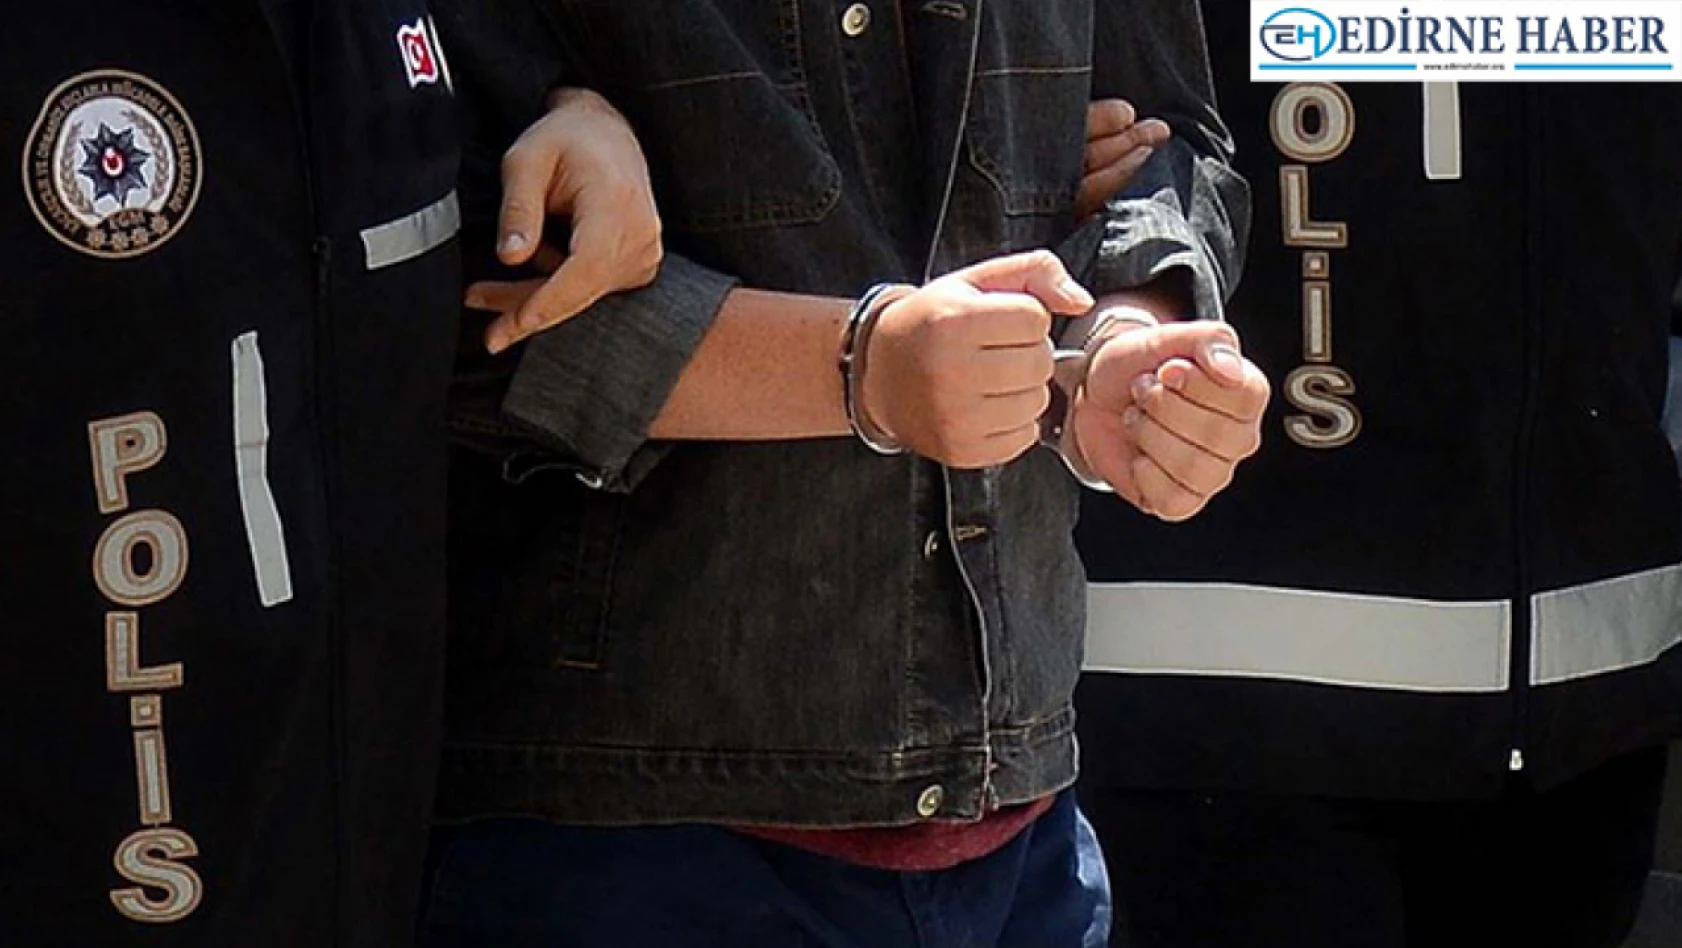 Edirne'de kaçak ürünler ele geçirilen aracın sürücüsü gözaltına alındı